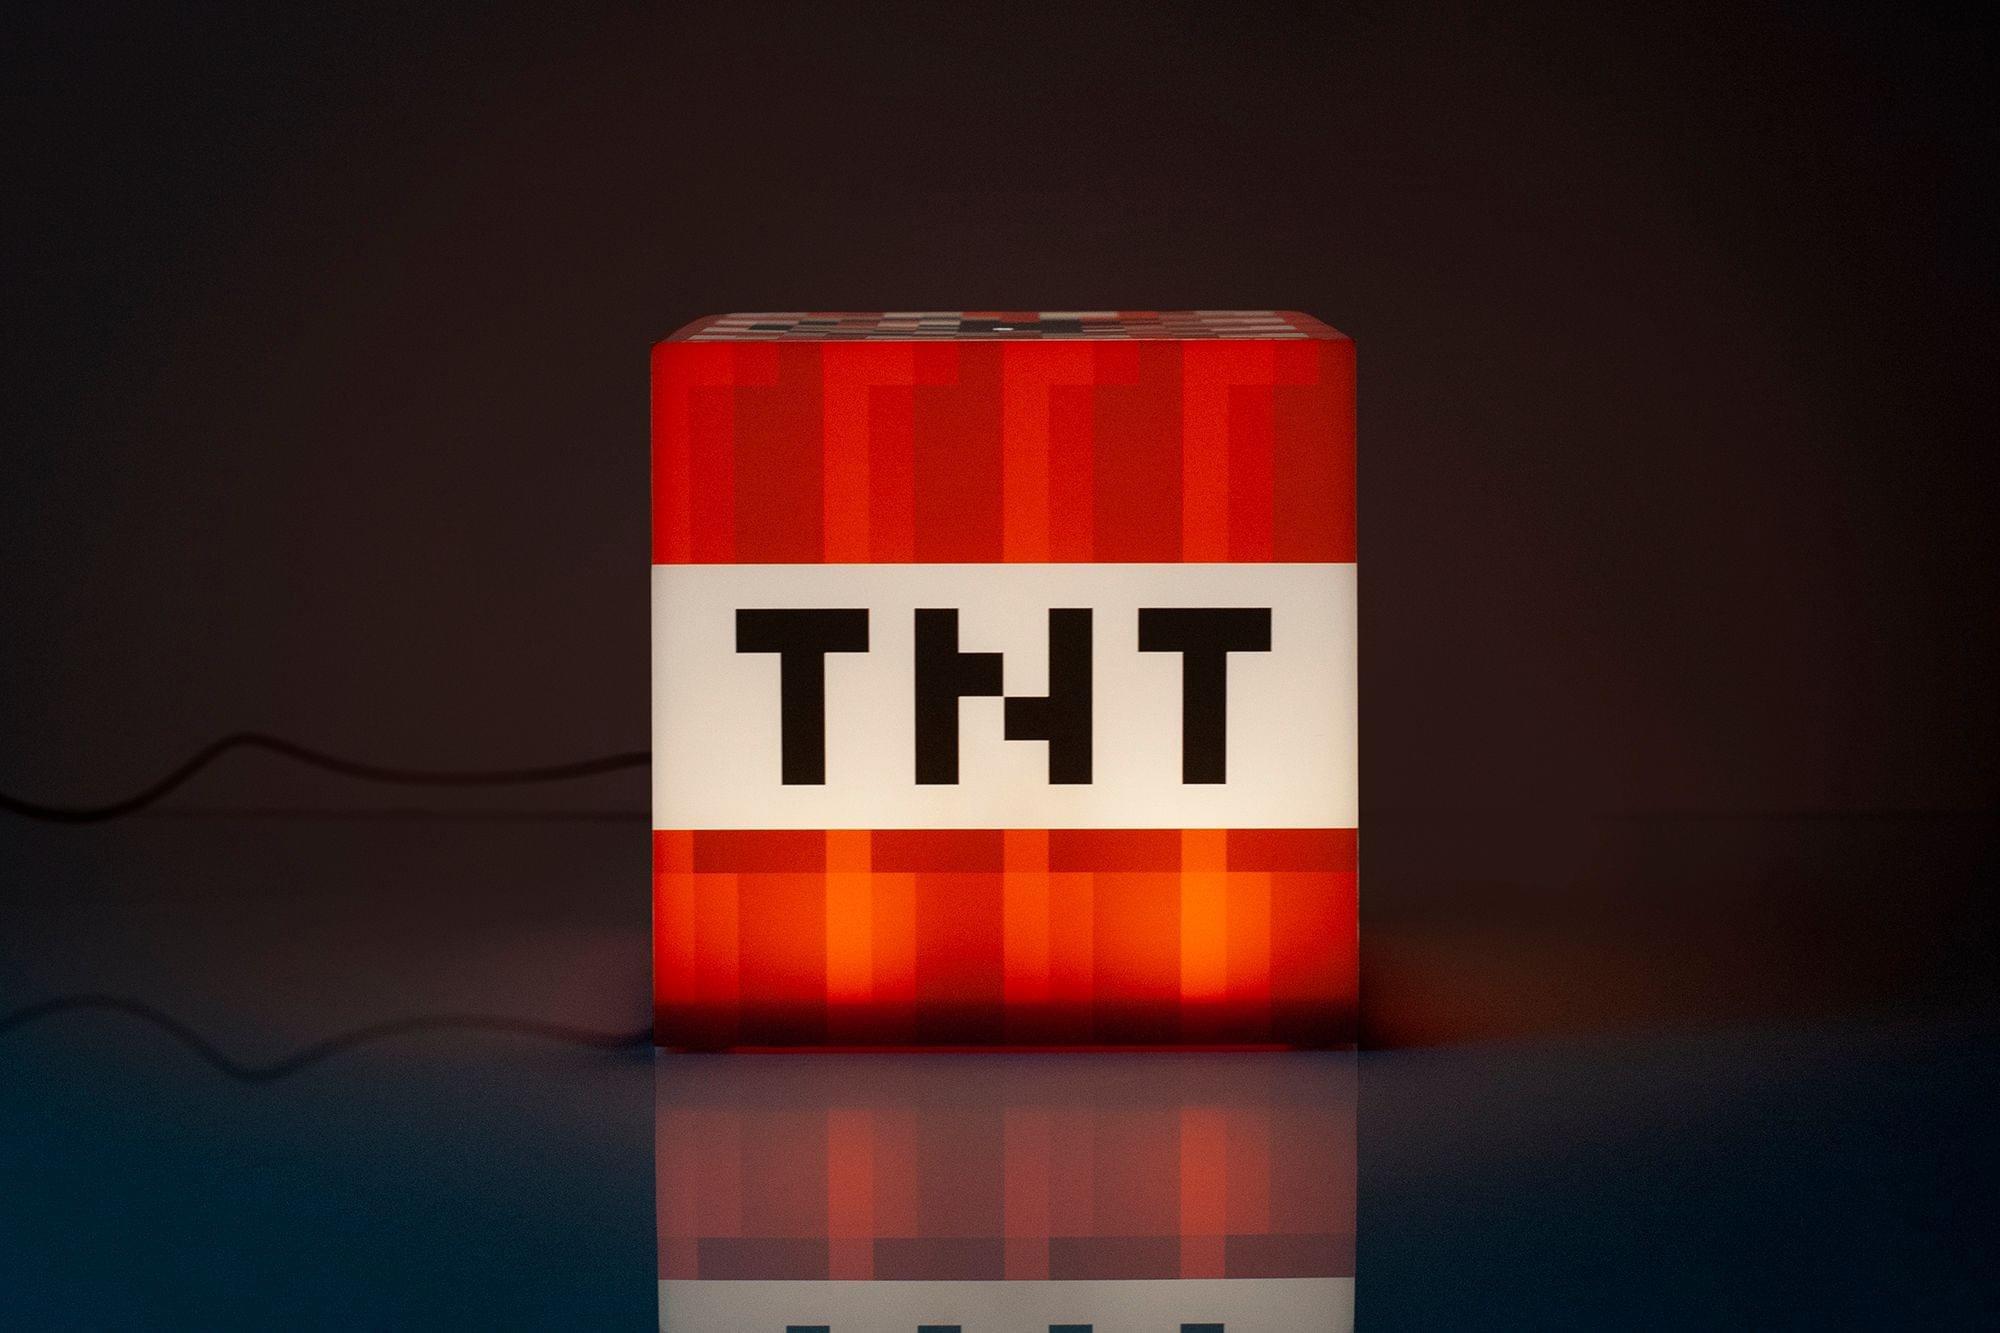 Minecraft TNT Block Mood Light | GameStop